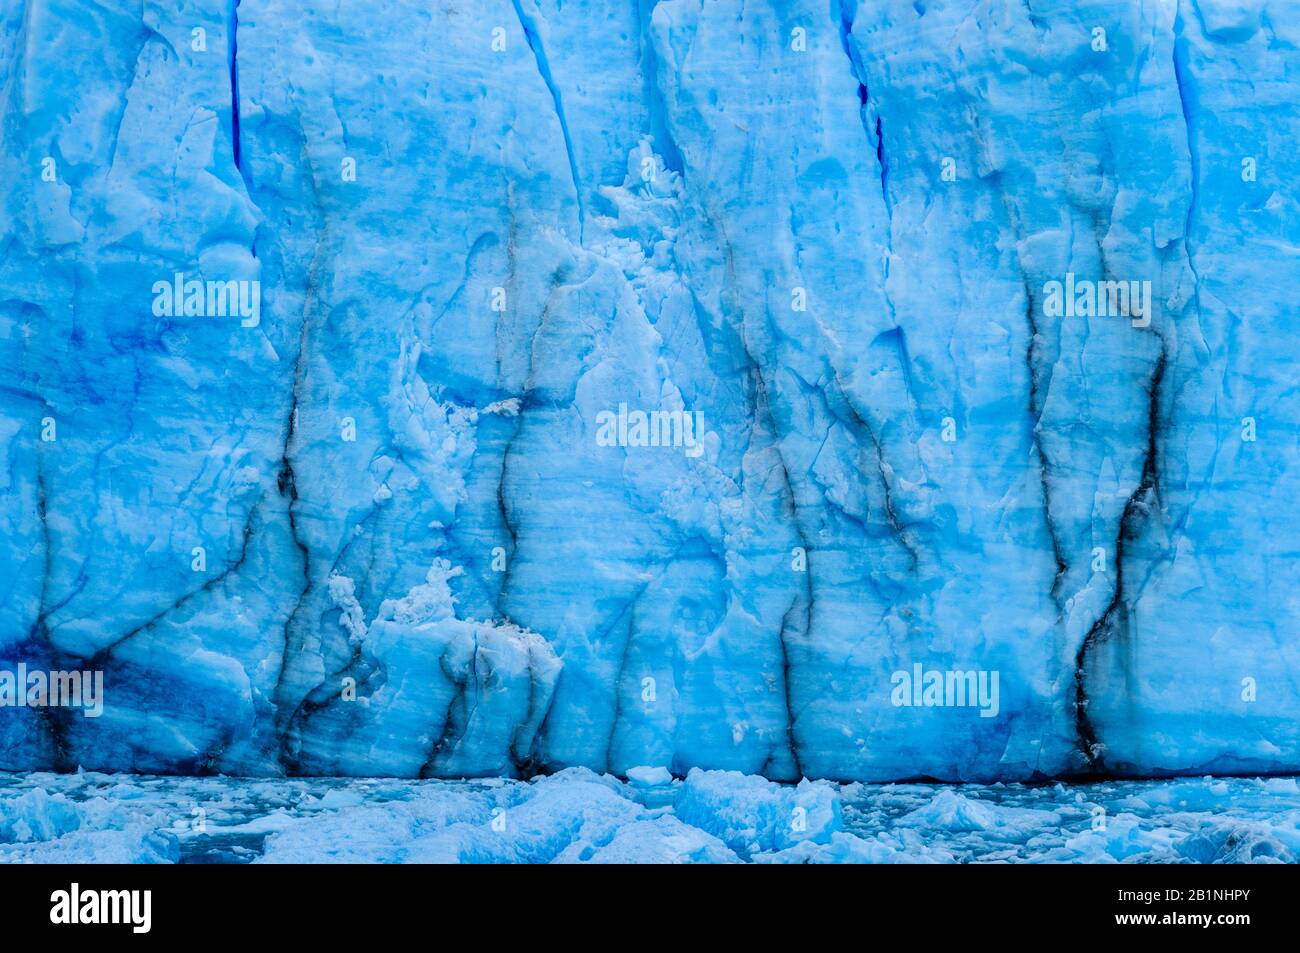 PARCO Nazionale LOS GLACIARES, ARGENTINA - CIRCA FEBBRAIO 2019: Primo piano del ghiacciaio Perito Moreno, un famoso punto di riferimento all'interno della Nazione Los Glaciares Foto Stock